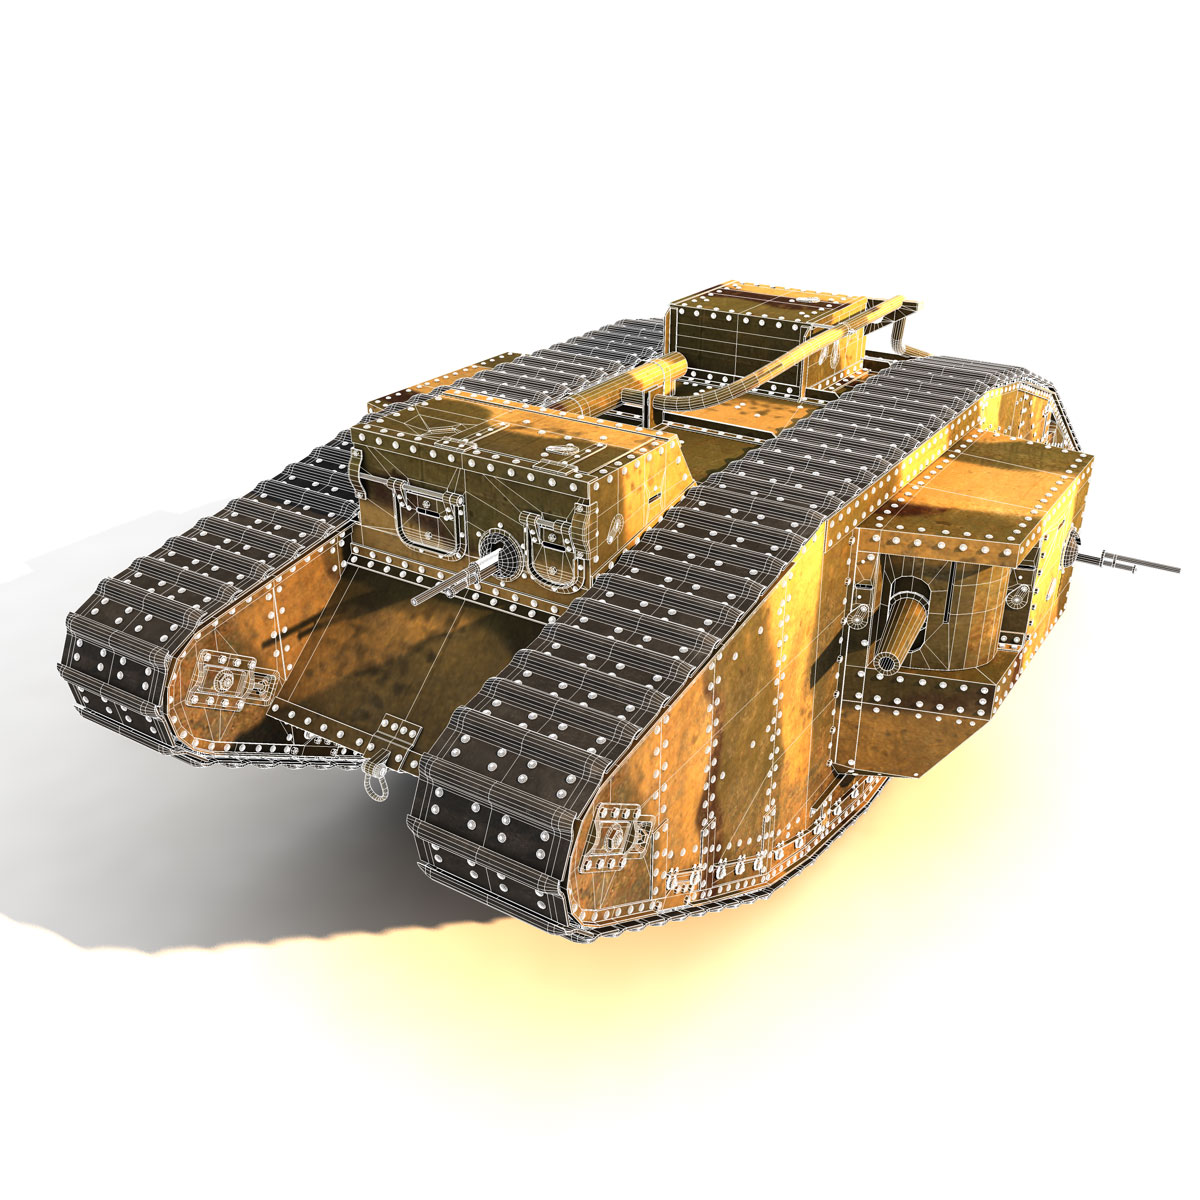 mark v military tank cost